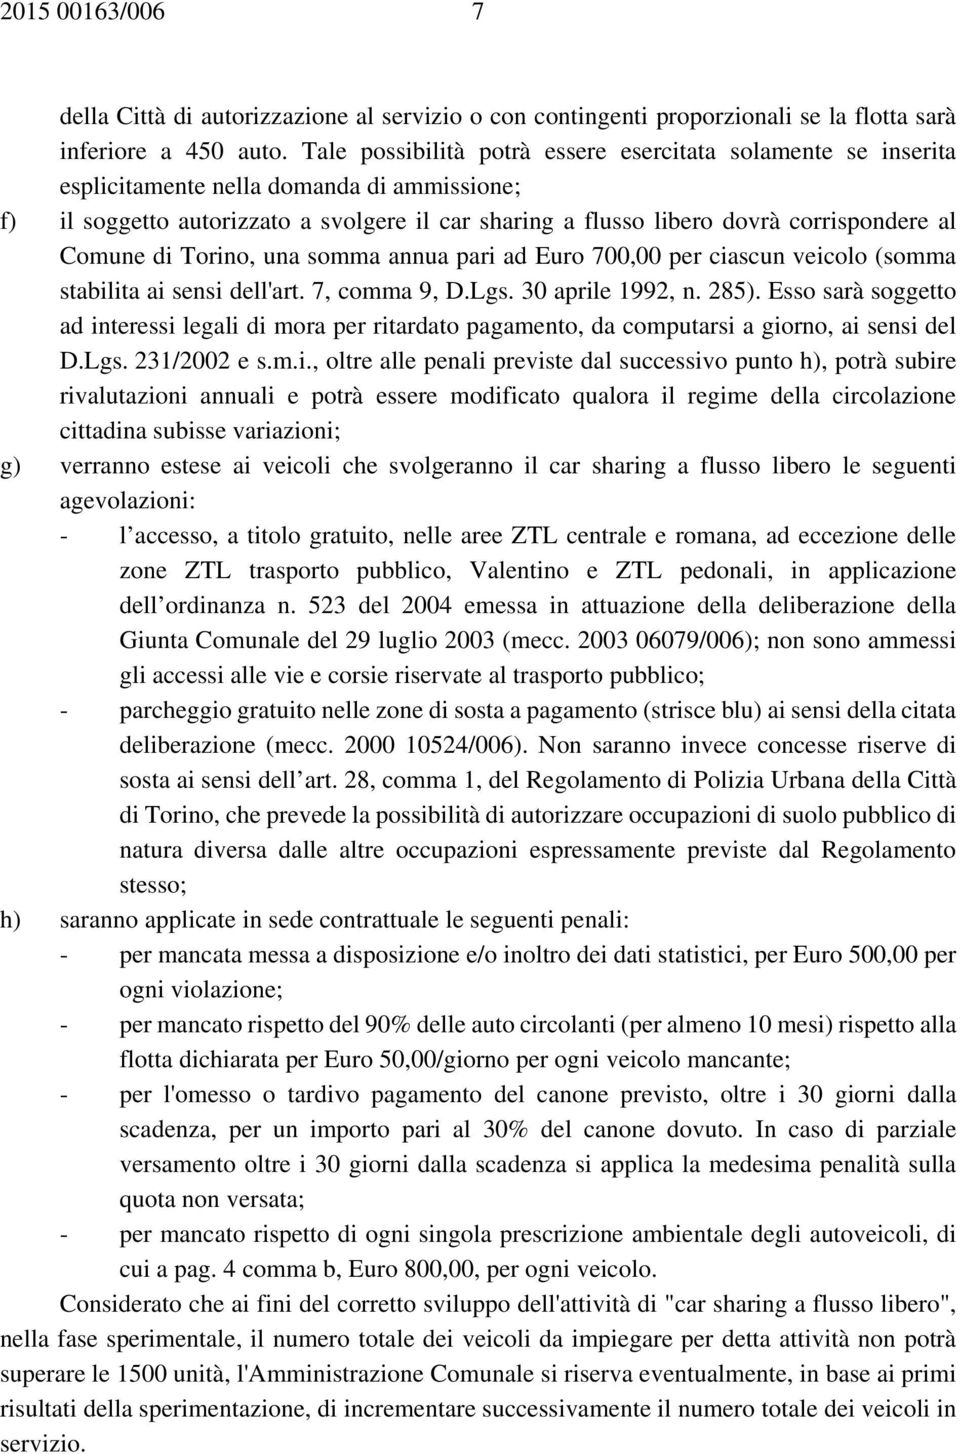 Comune di Torino, una somma annua pari ad Euro 700,00 per ciascun veicolo (somma stabilita ai sensi dell'art. 7, comma 9, D.Lgs. 30 aprile 1992, n. 285).